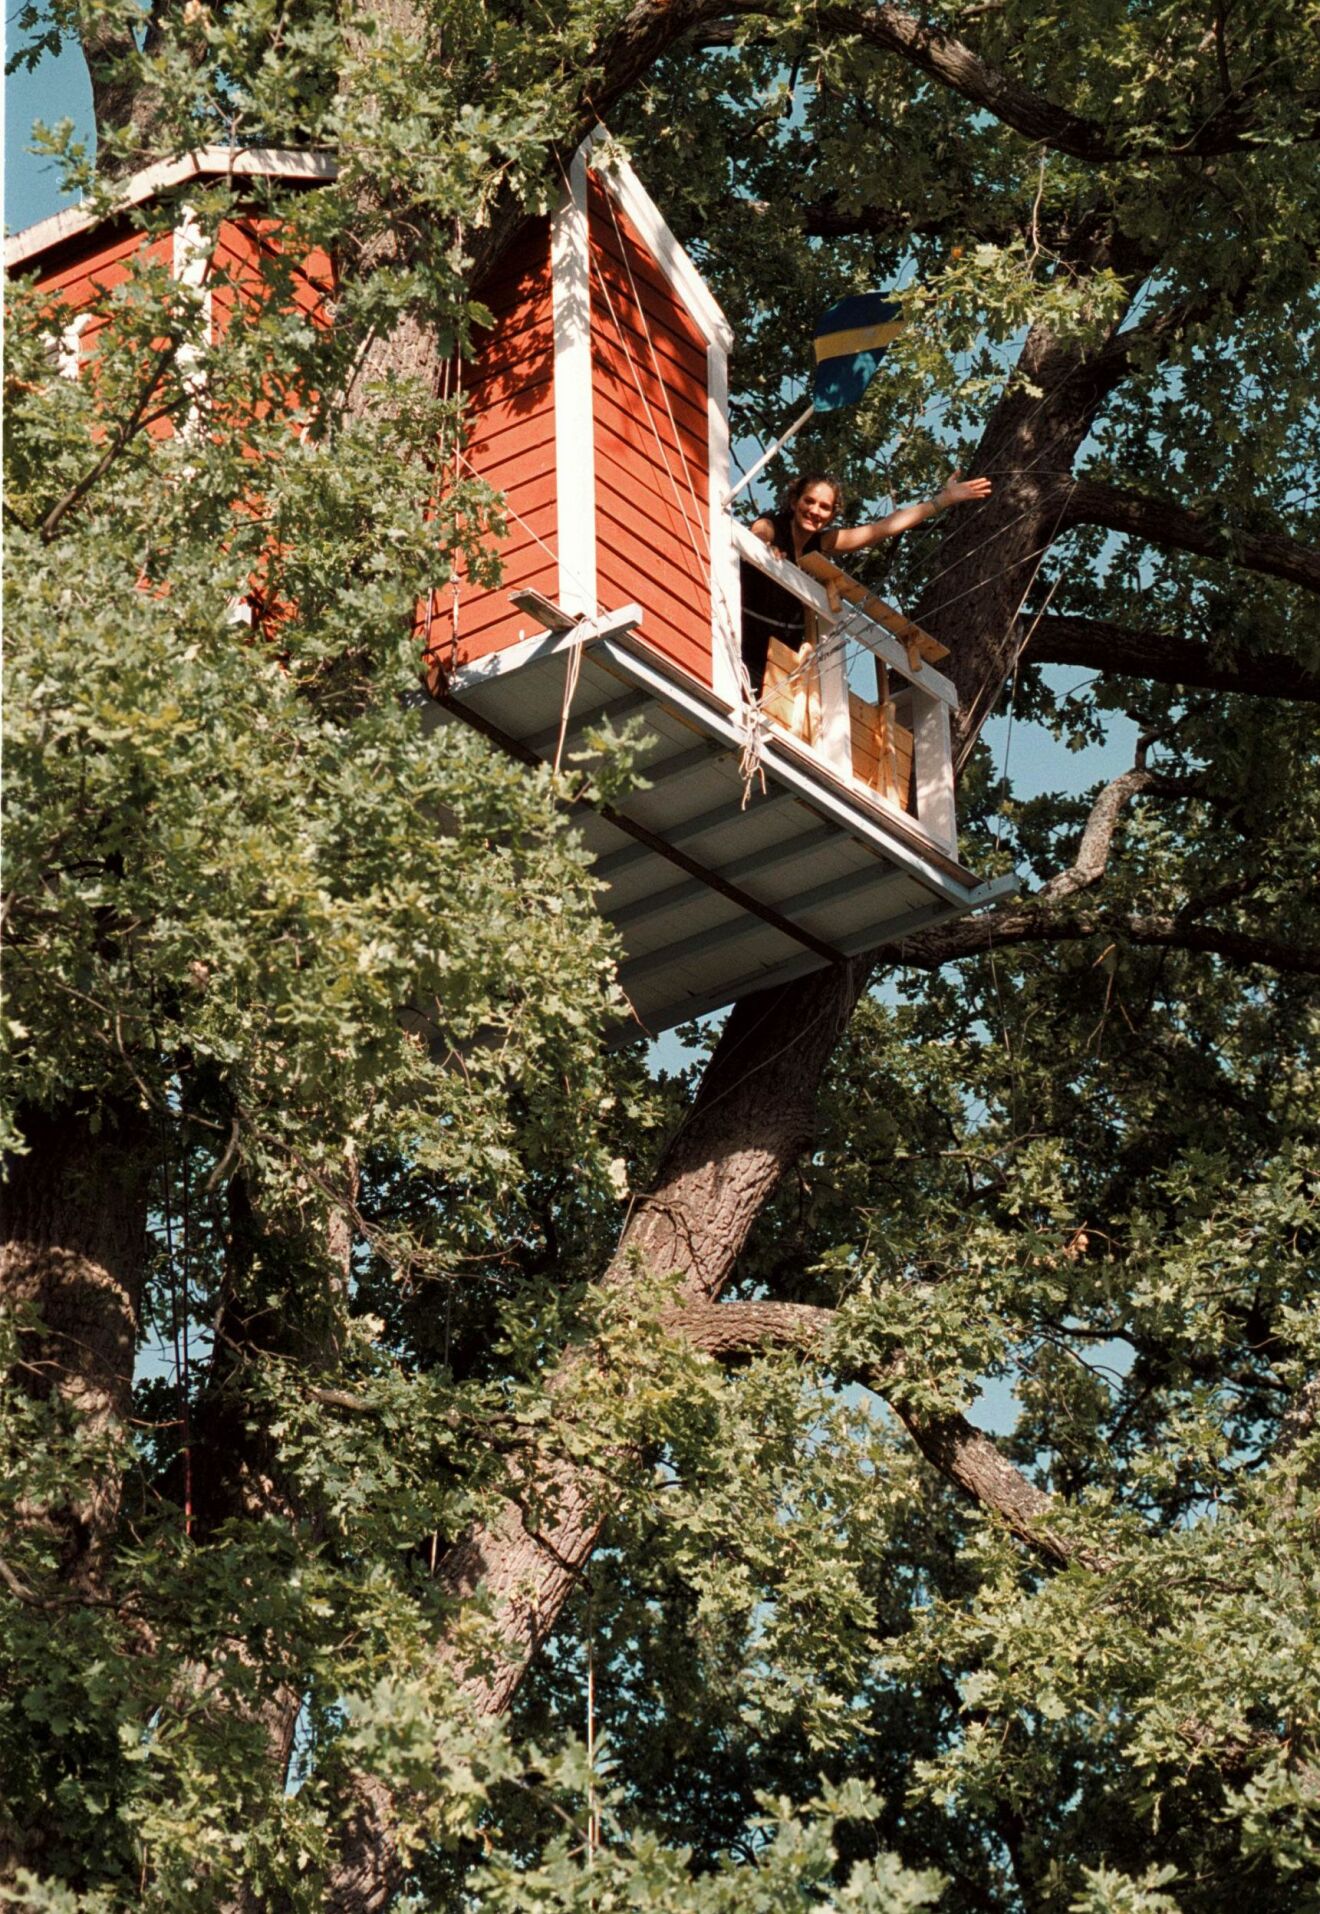 Hotell Hackspett, trädhushotellet uppe i ett träd i centrala Västerås.